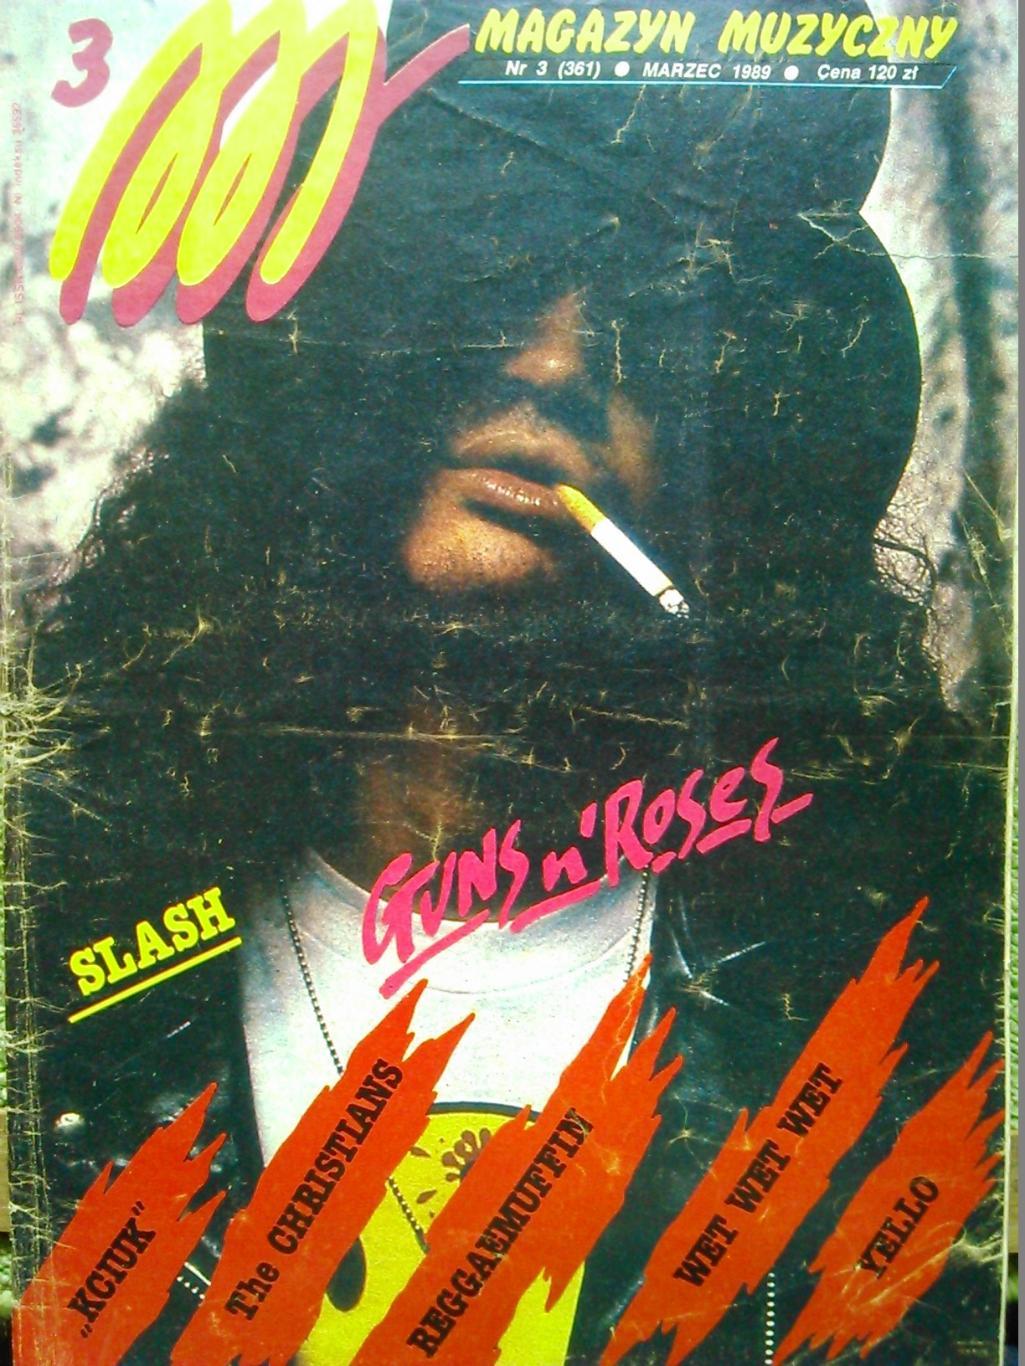 Magazyn muzyczny #3/1989/(Польща). Музыкальный журнал.Слэш.(Ганз-н-Розес).